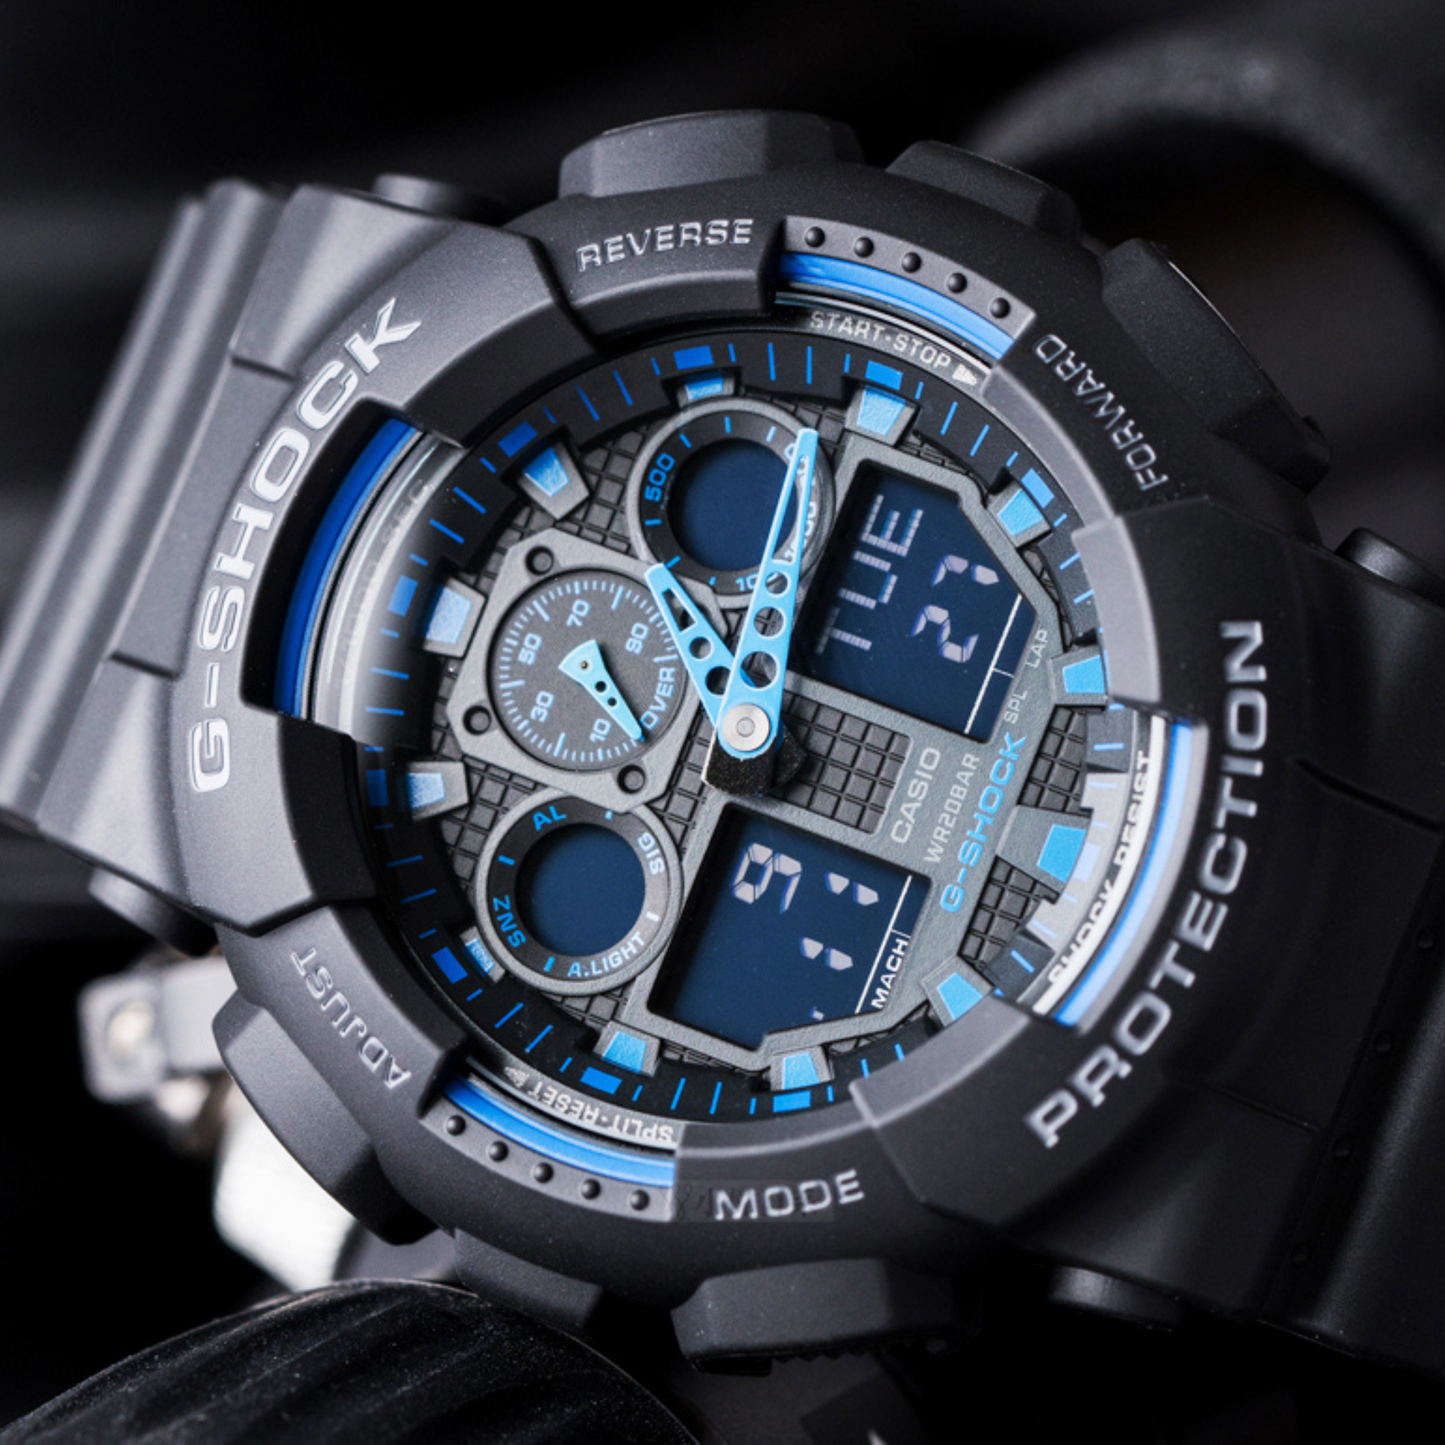 Reloj G-Shock Digital Hombre GA-100-1A2DR